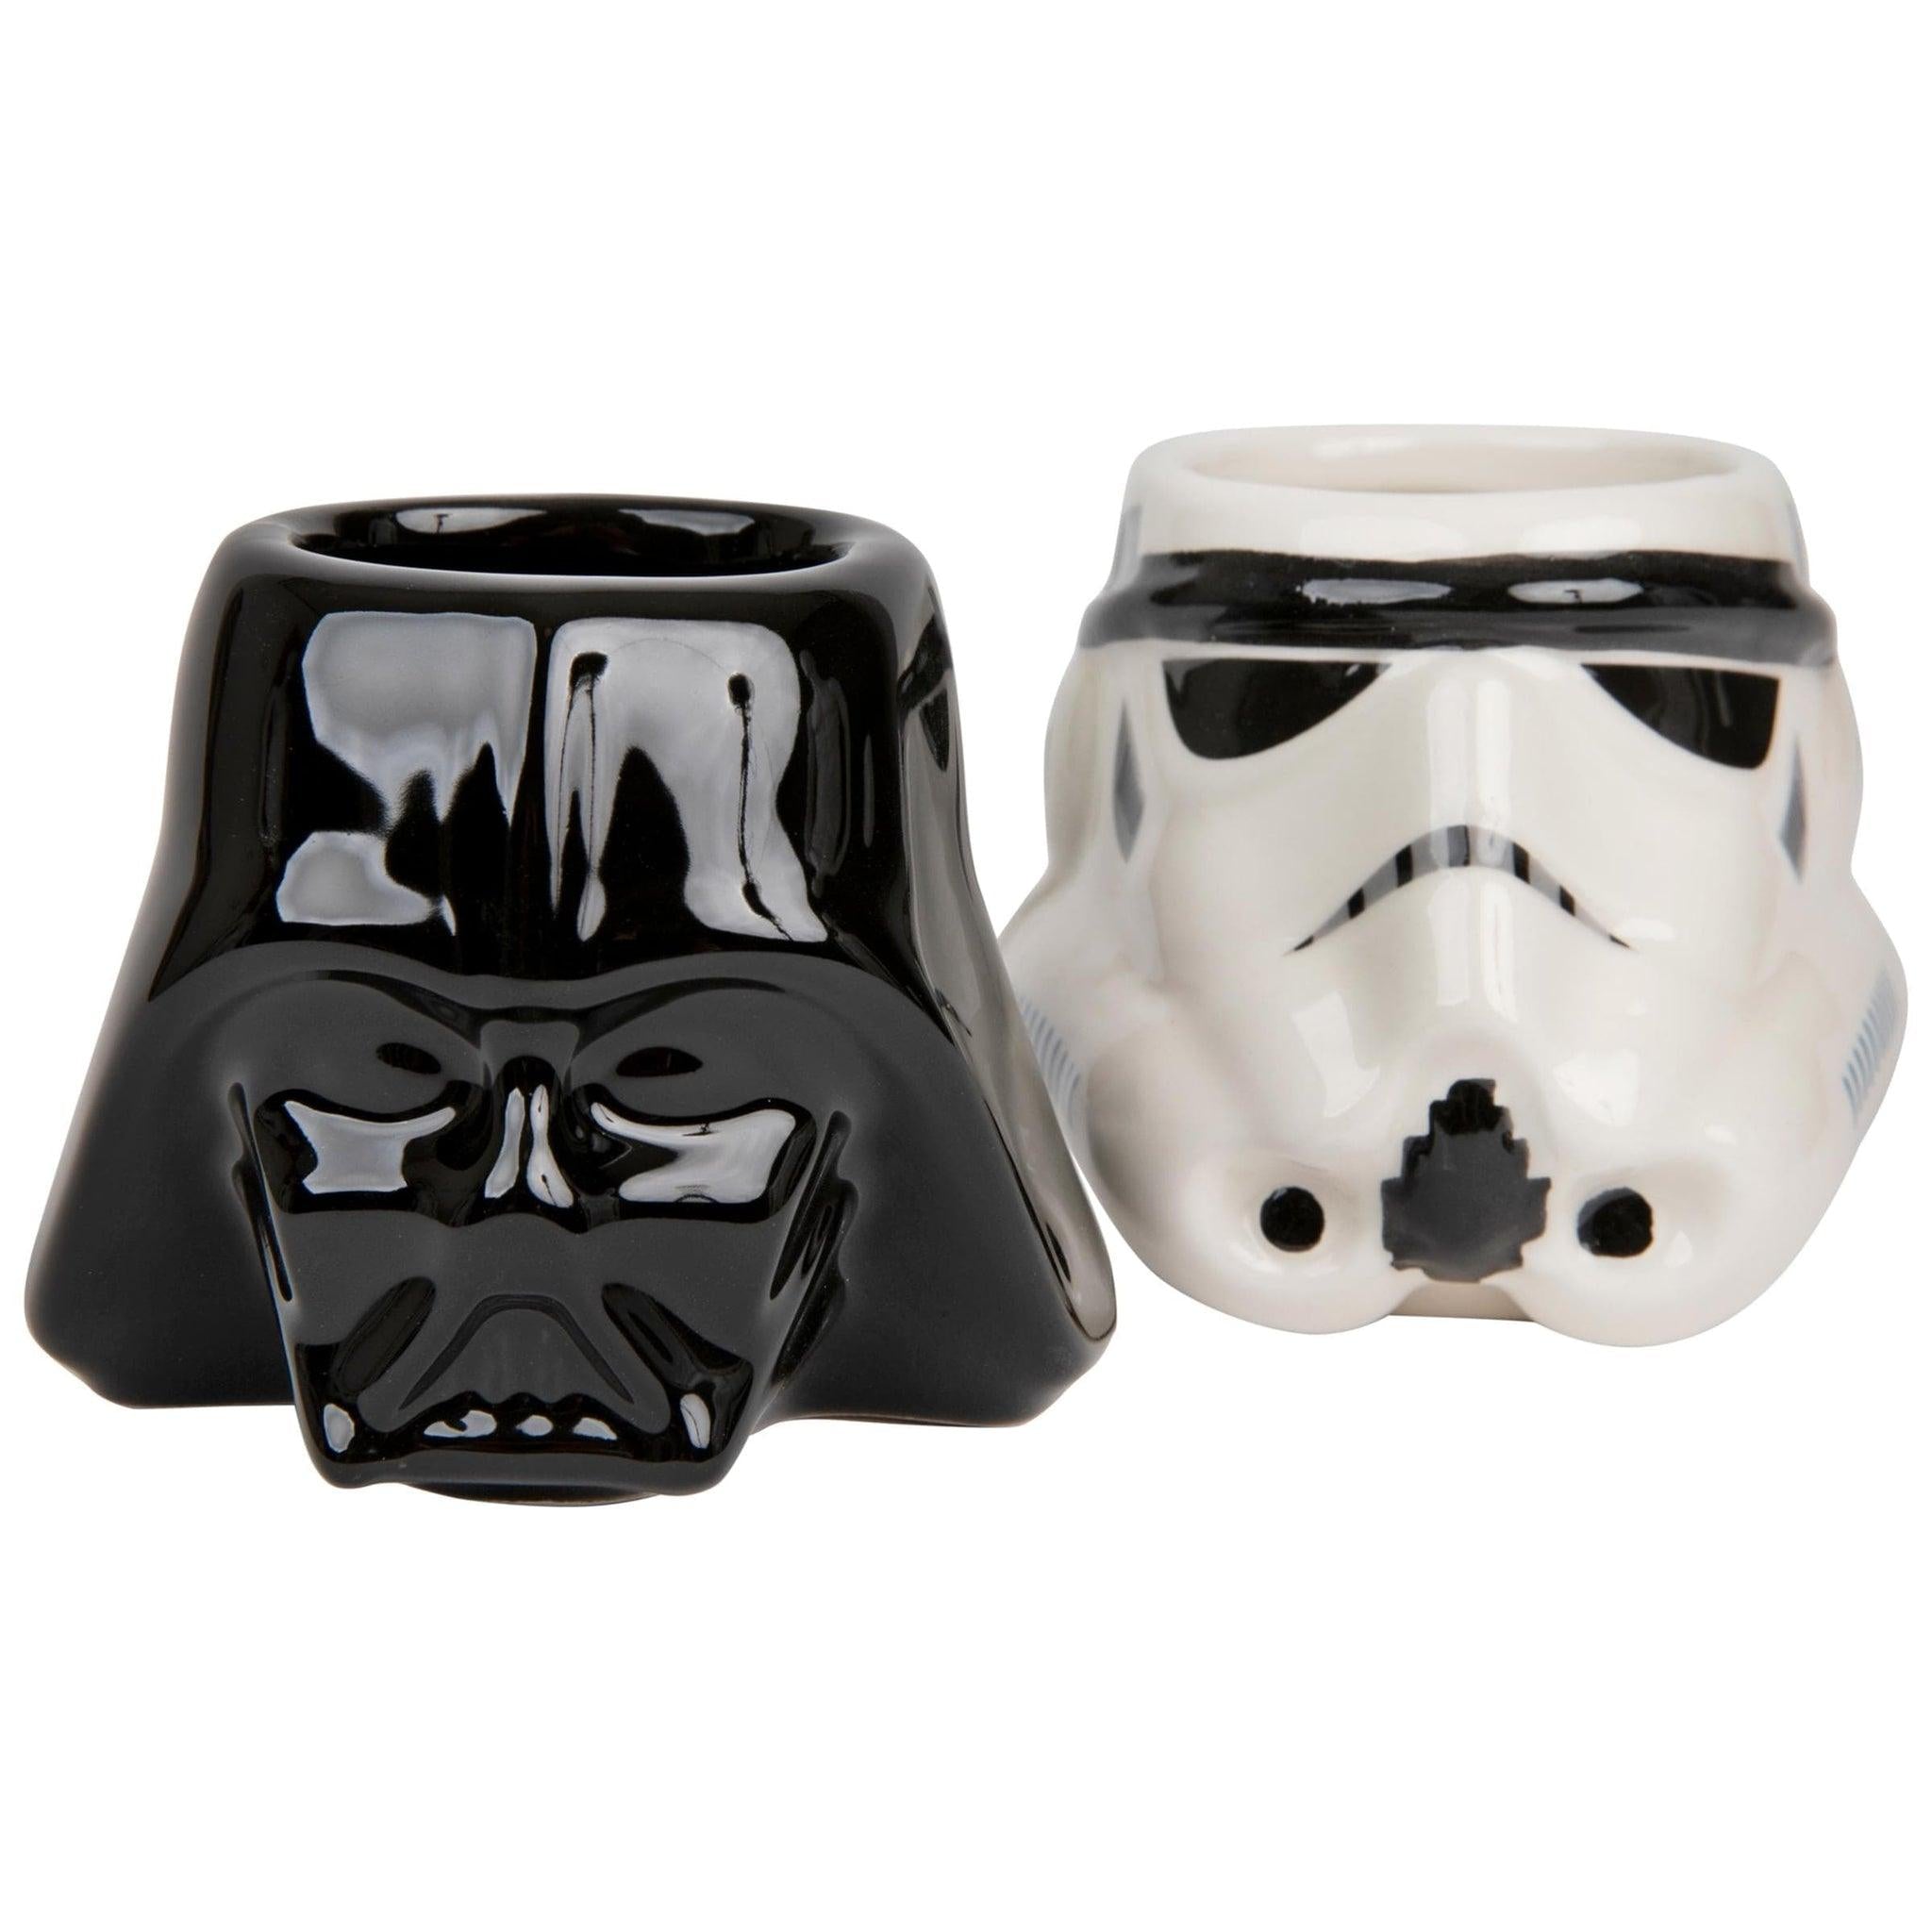 https://floridagifts.com/cdn/shop/files/star-wars-darth-vader-and-stormtrooper-mini-mug-set-2-33074312118456.jpg?v=1692811534&width=2048